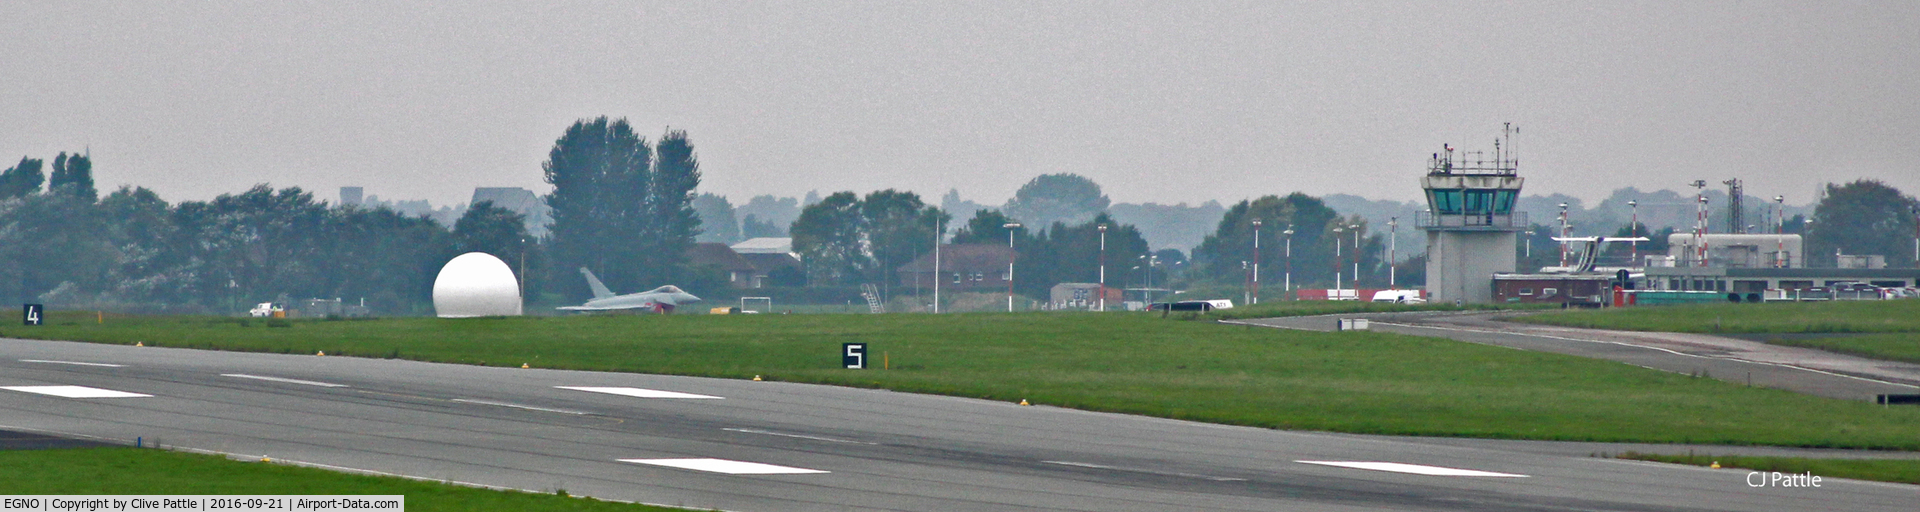 Warton Aerodrome Airport, Preston, England United Kingdom (EGNO) - Over the fence at BAe Warton EGNO